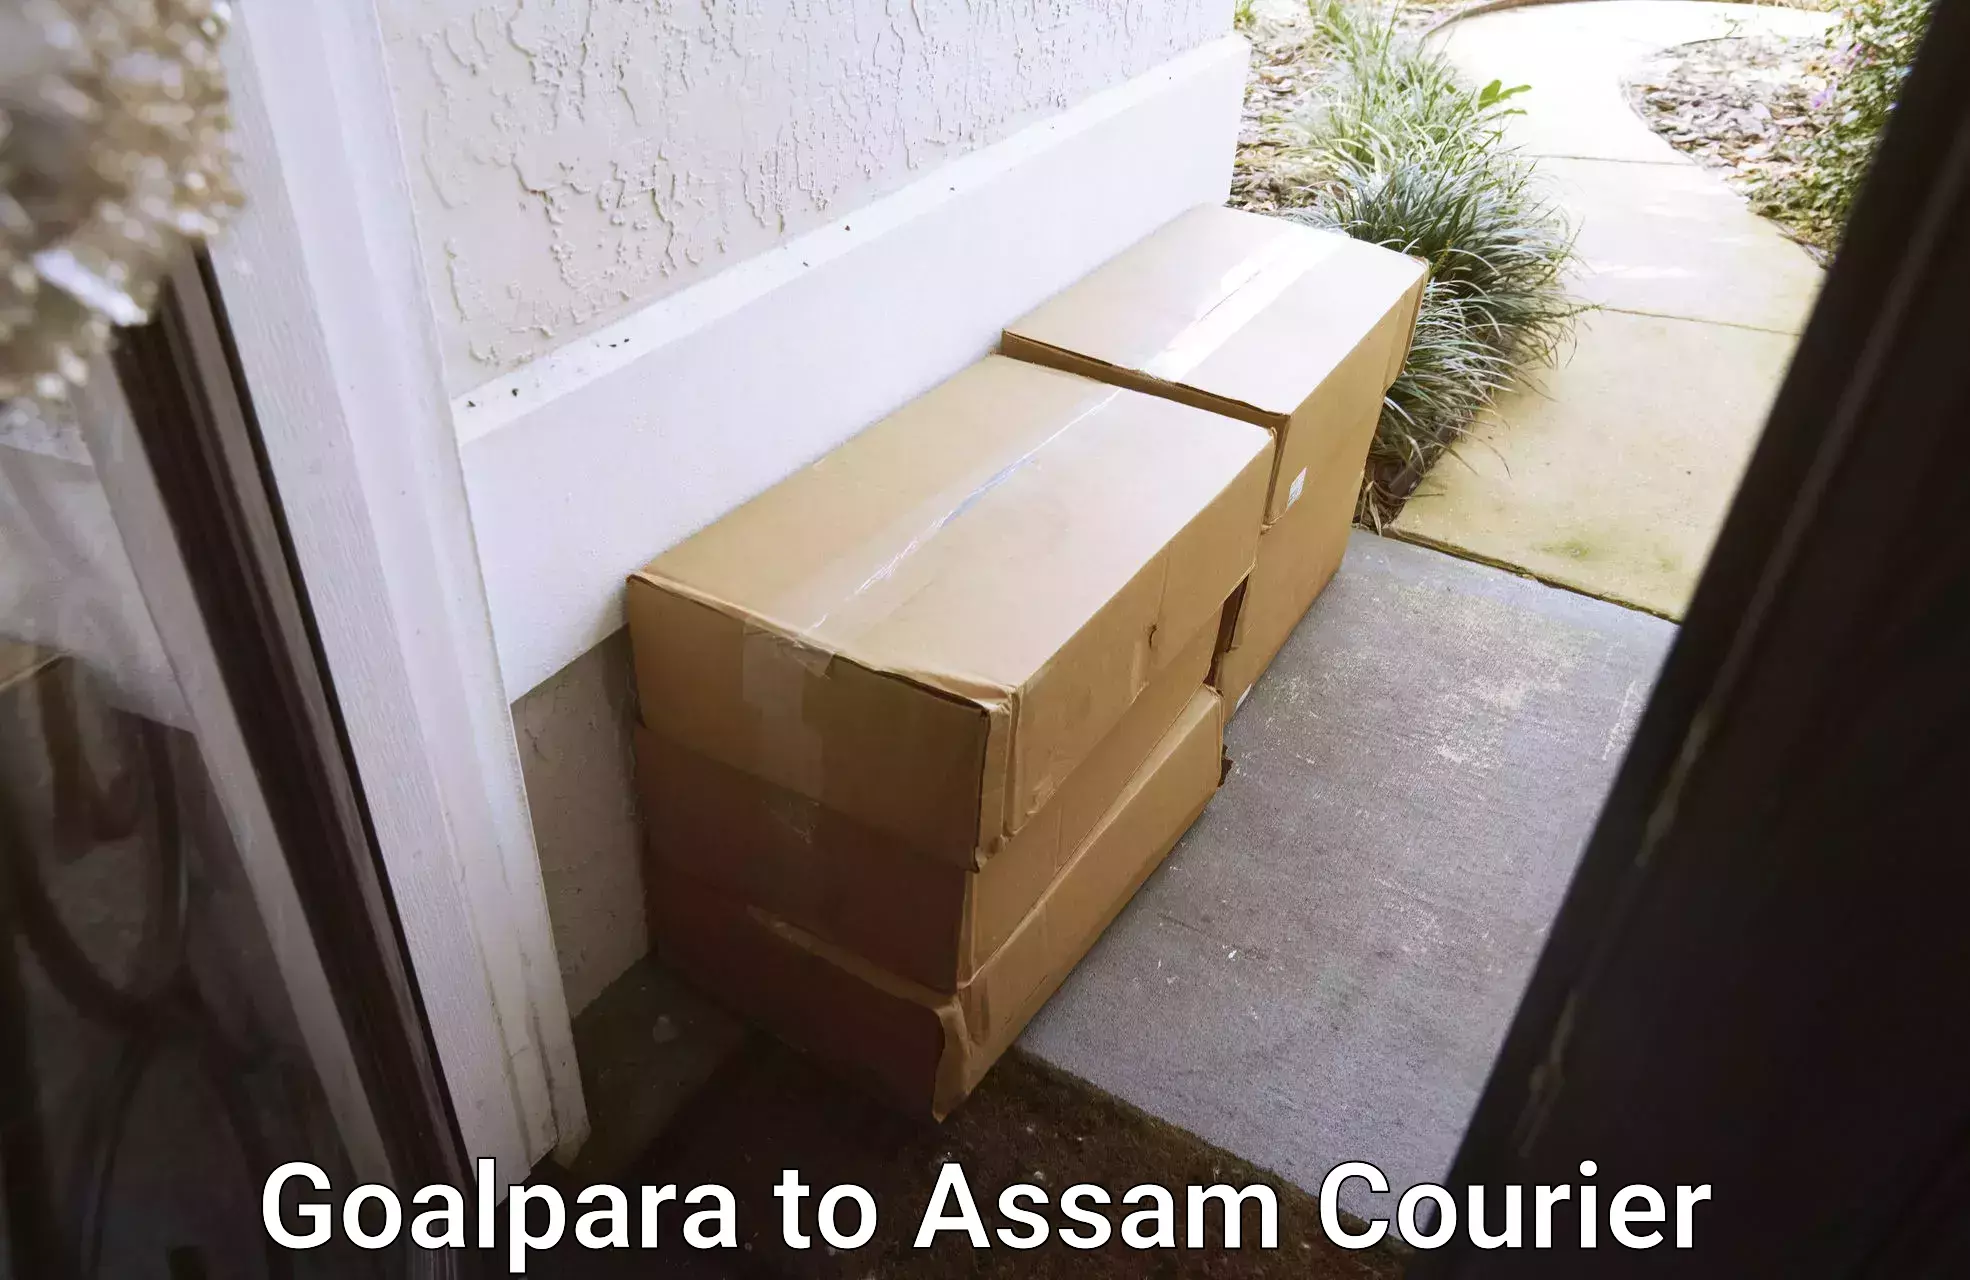 Cargo delivery service Goalpara to Sarupathar